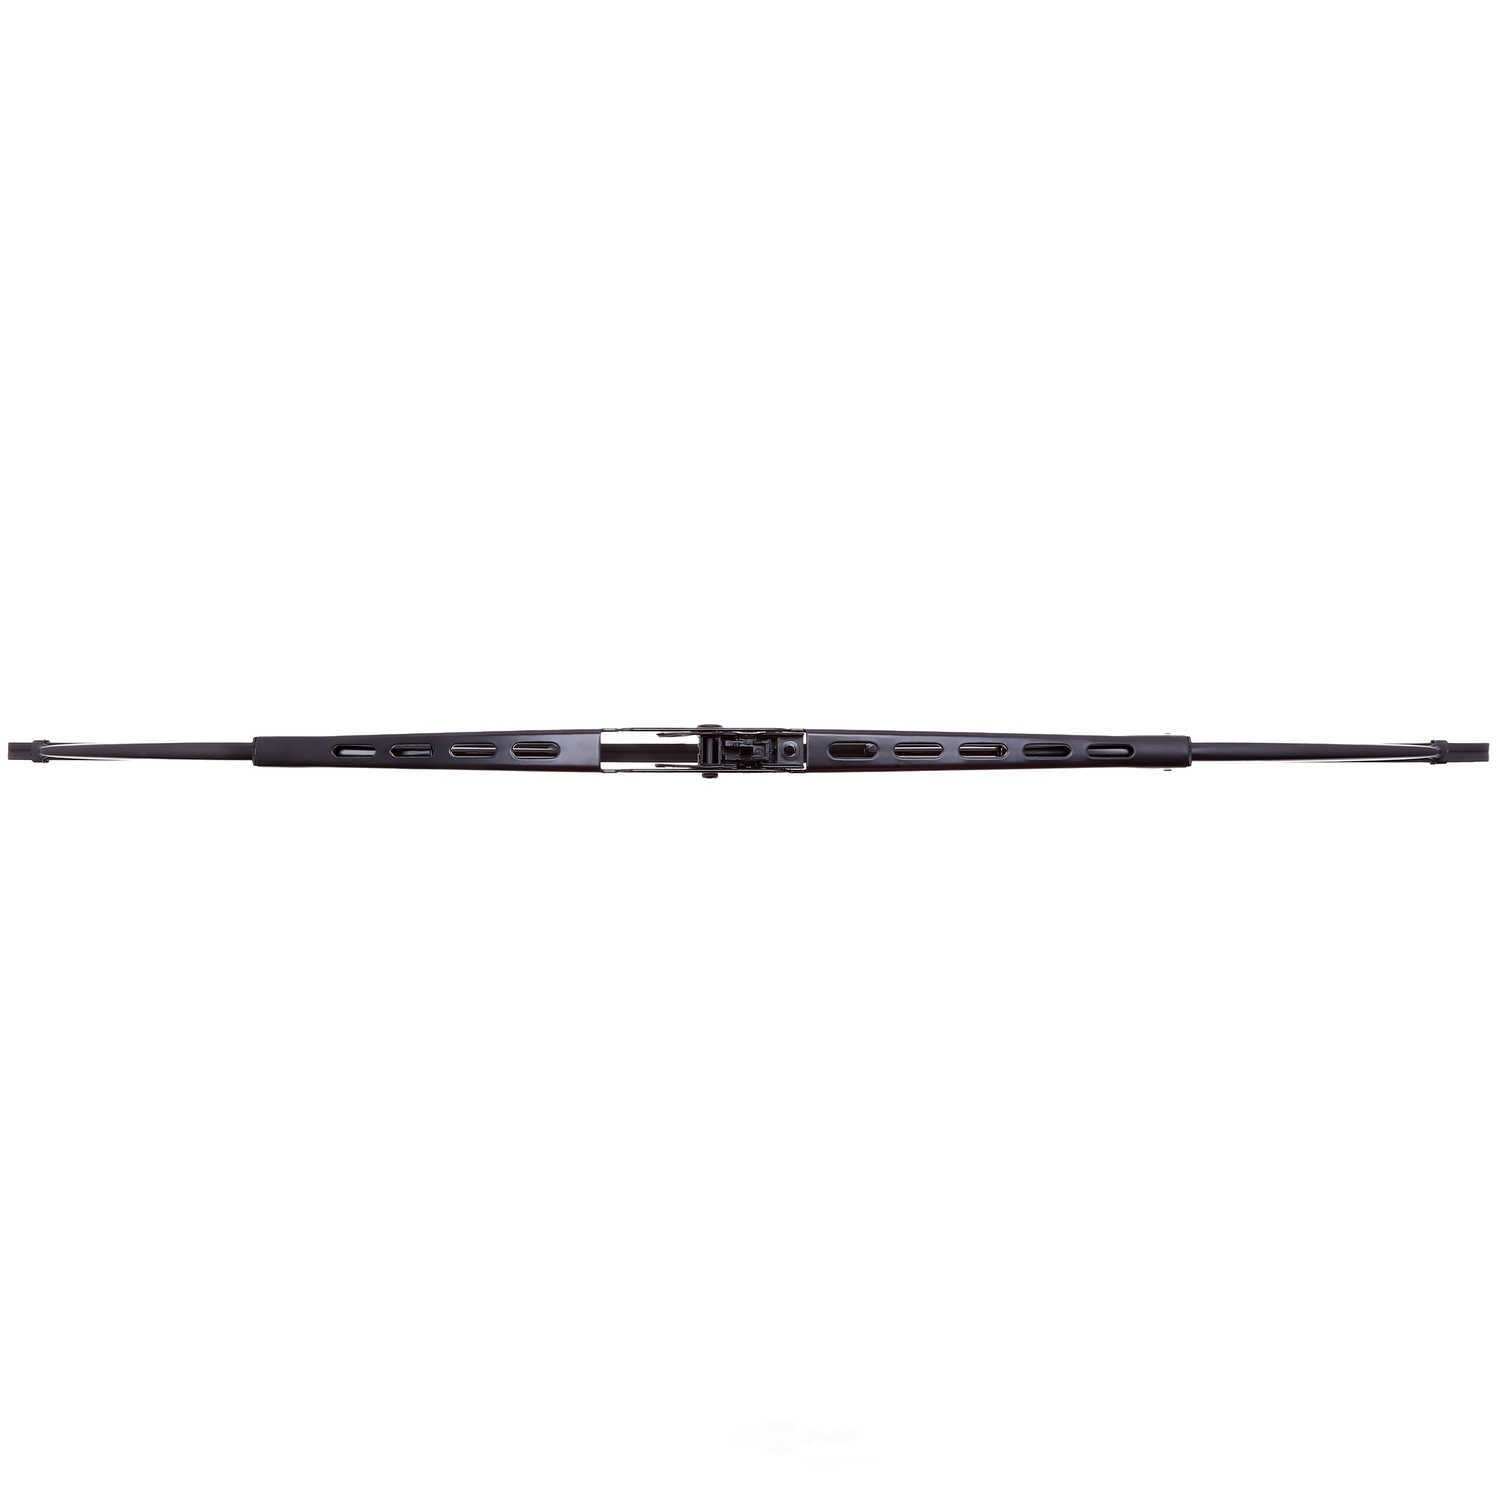 ANCO WIPER PRODUCTS - ANCO 97-Series Wiper Blade - ANC 97-19